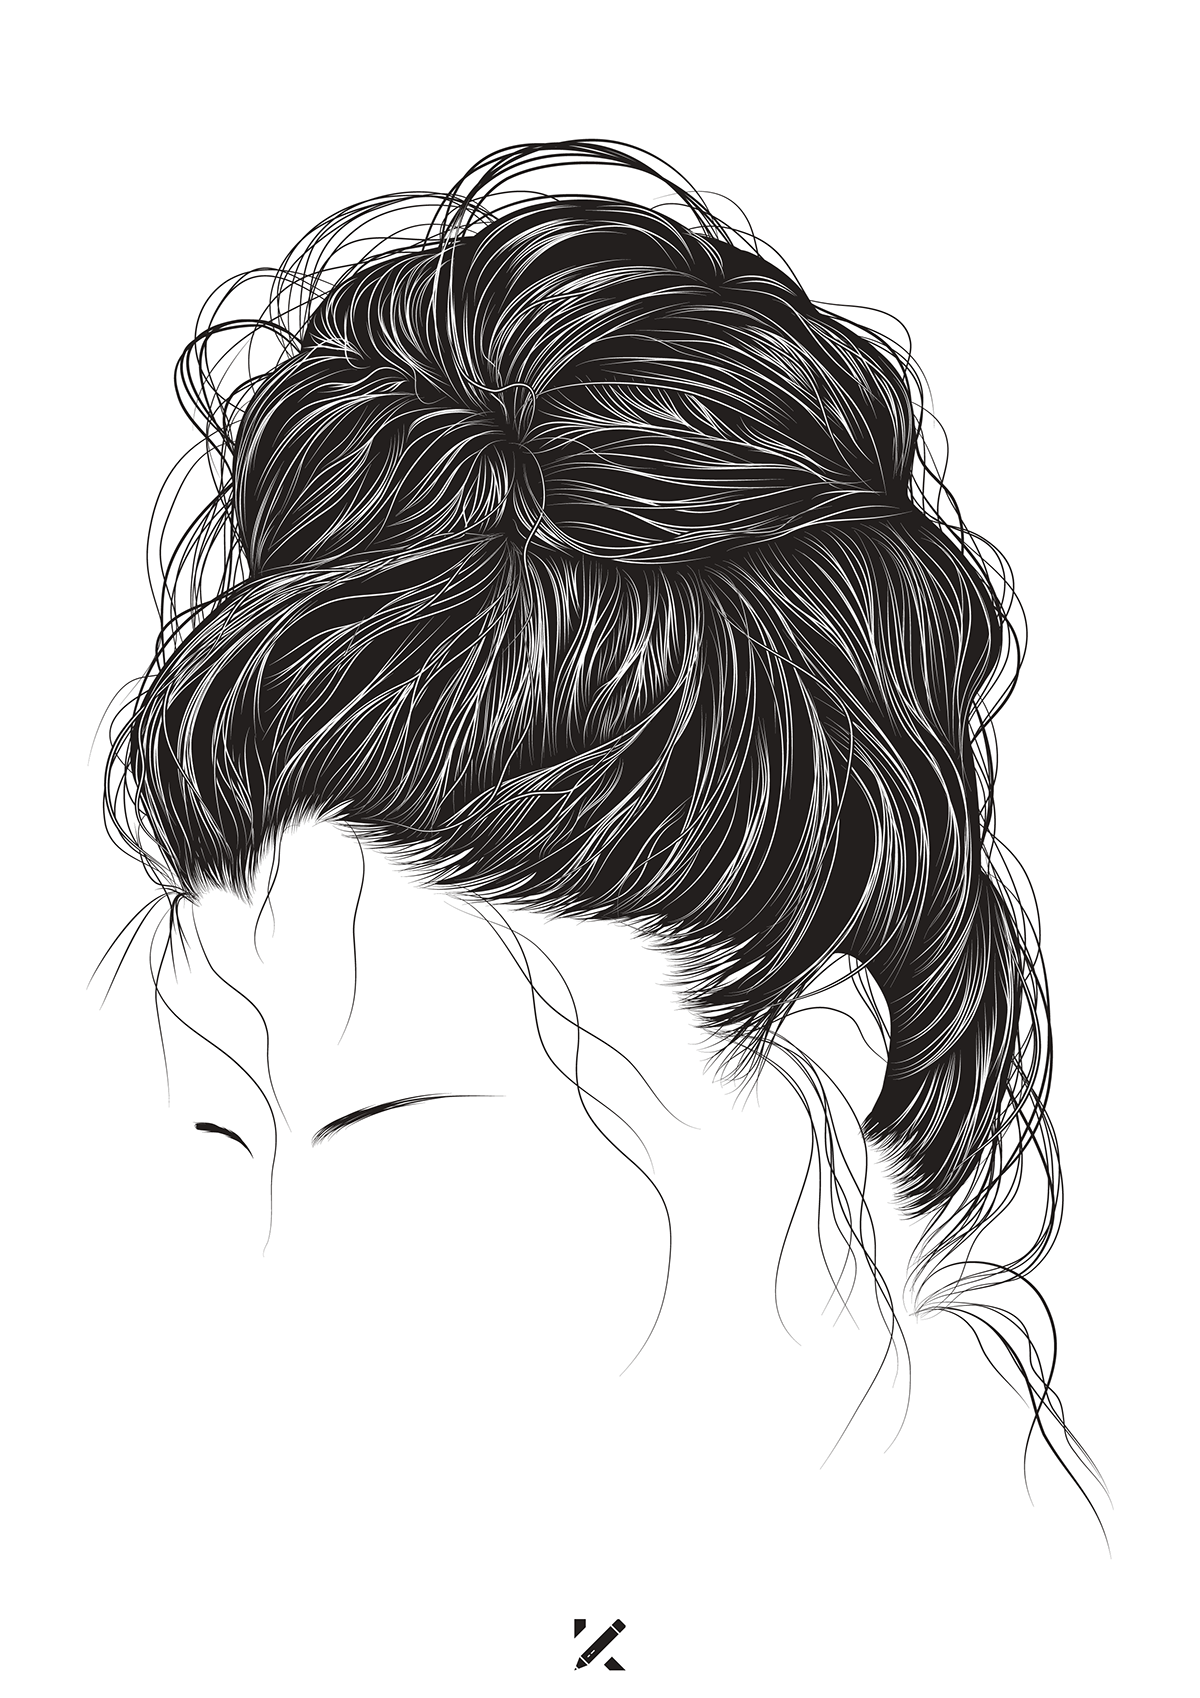 Hair Sketch Images  Free Download on Freepik